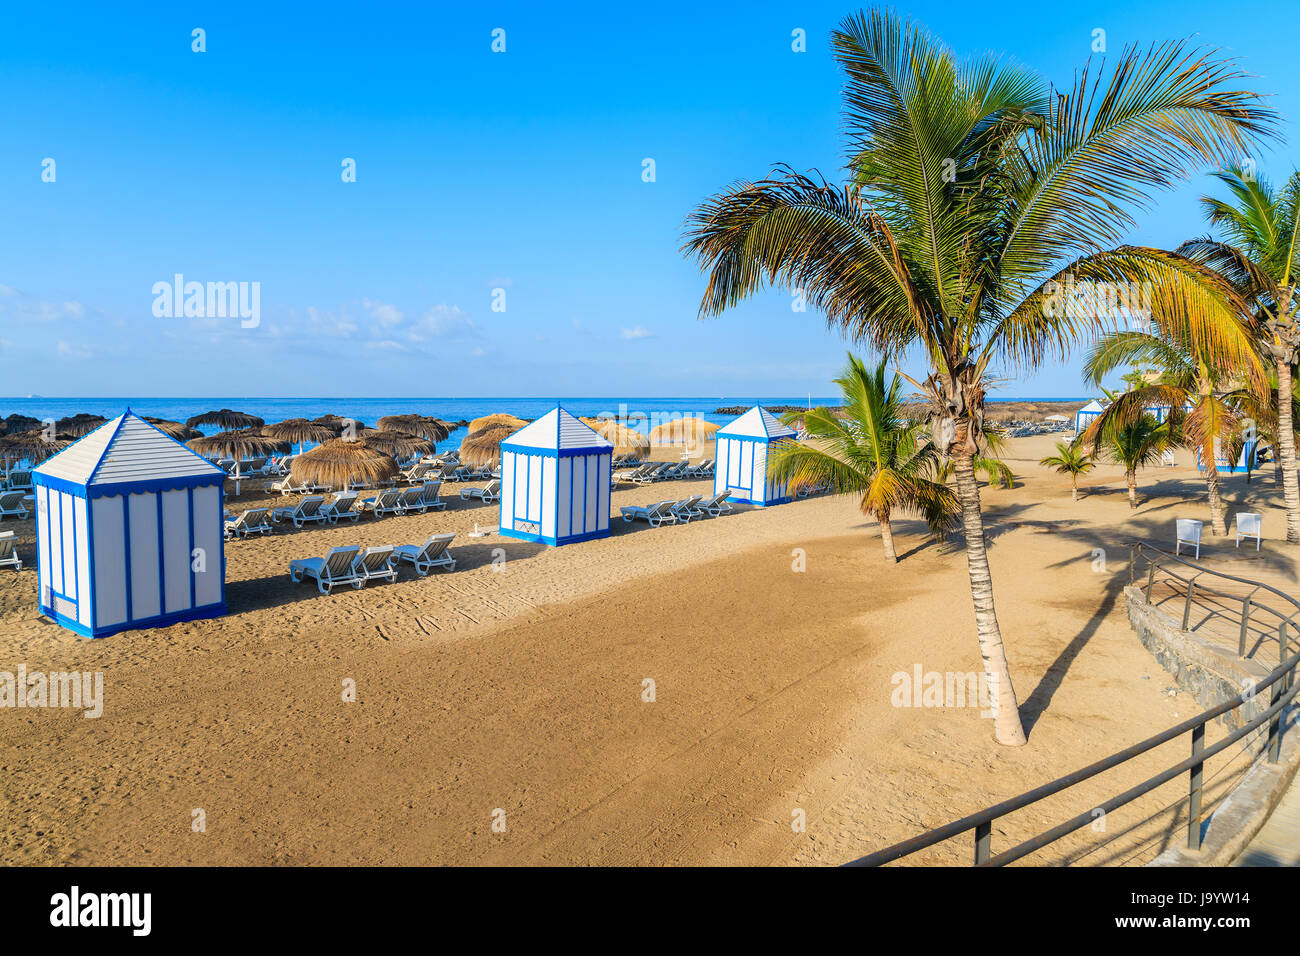 Palmen am Strand El Duque in Costa Adeje am Meer Stadt, Teneriffa, Kanarische Inseln, Spanien Stockfoto